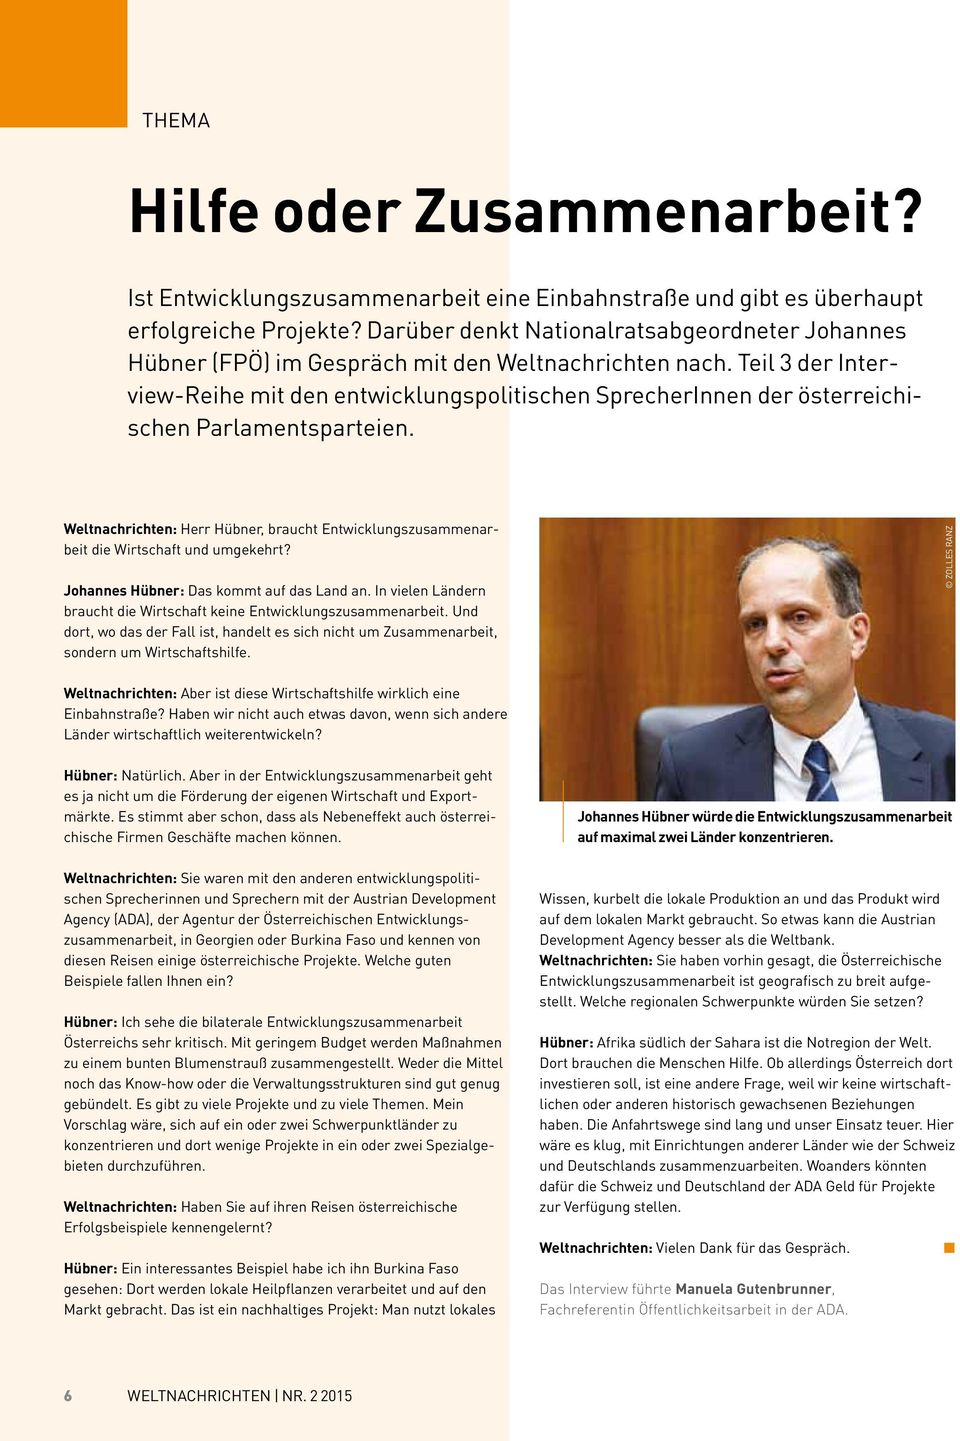 Teil 3 der Interview-Reihe mit den entwicklungspolitischen SprecherInnen der österreichischen Parlamentsparteien.